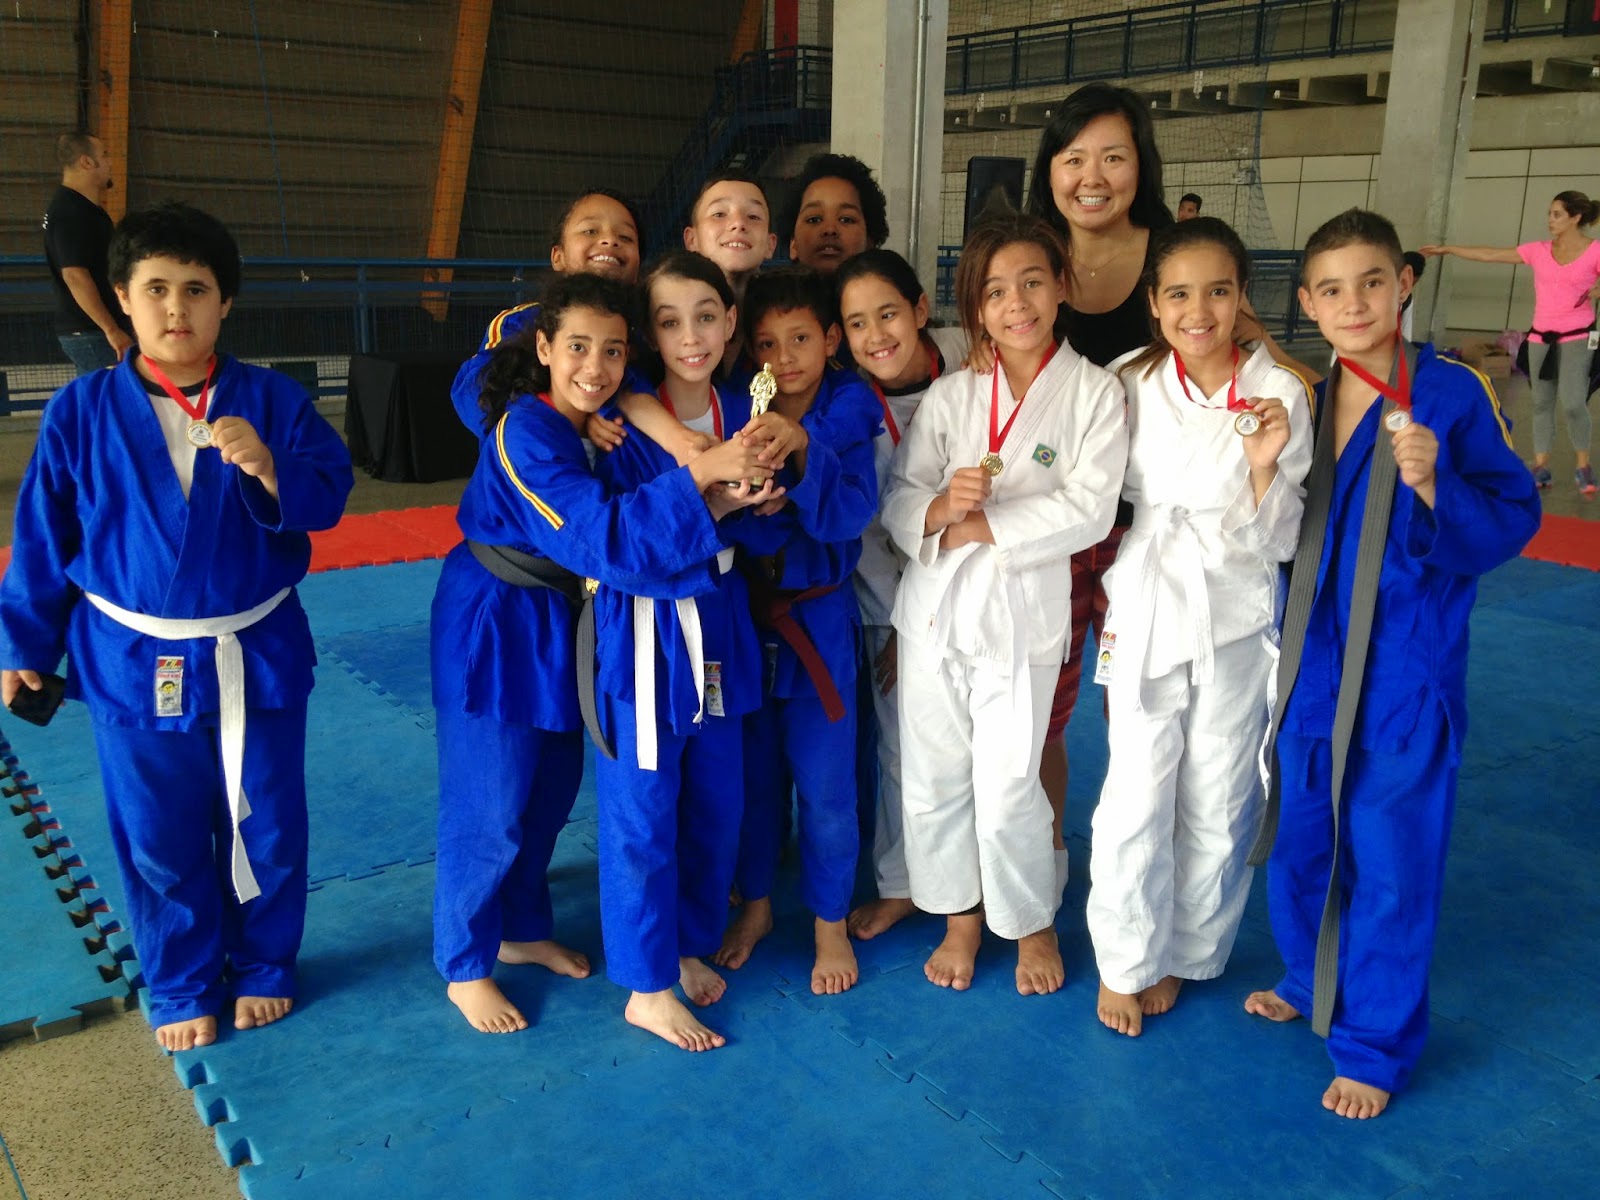 http://www.blogdoalvaresdeazevedo.blogspot.com.br/2014/12/campeonato-de-judo-dre-freguesia-do-o.html